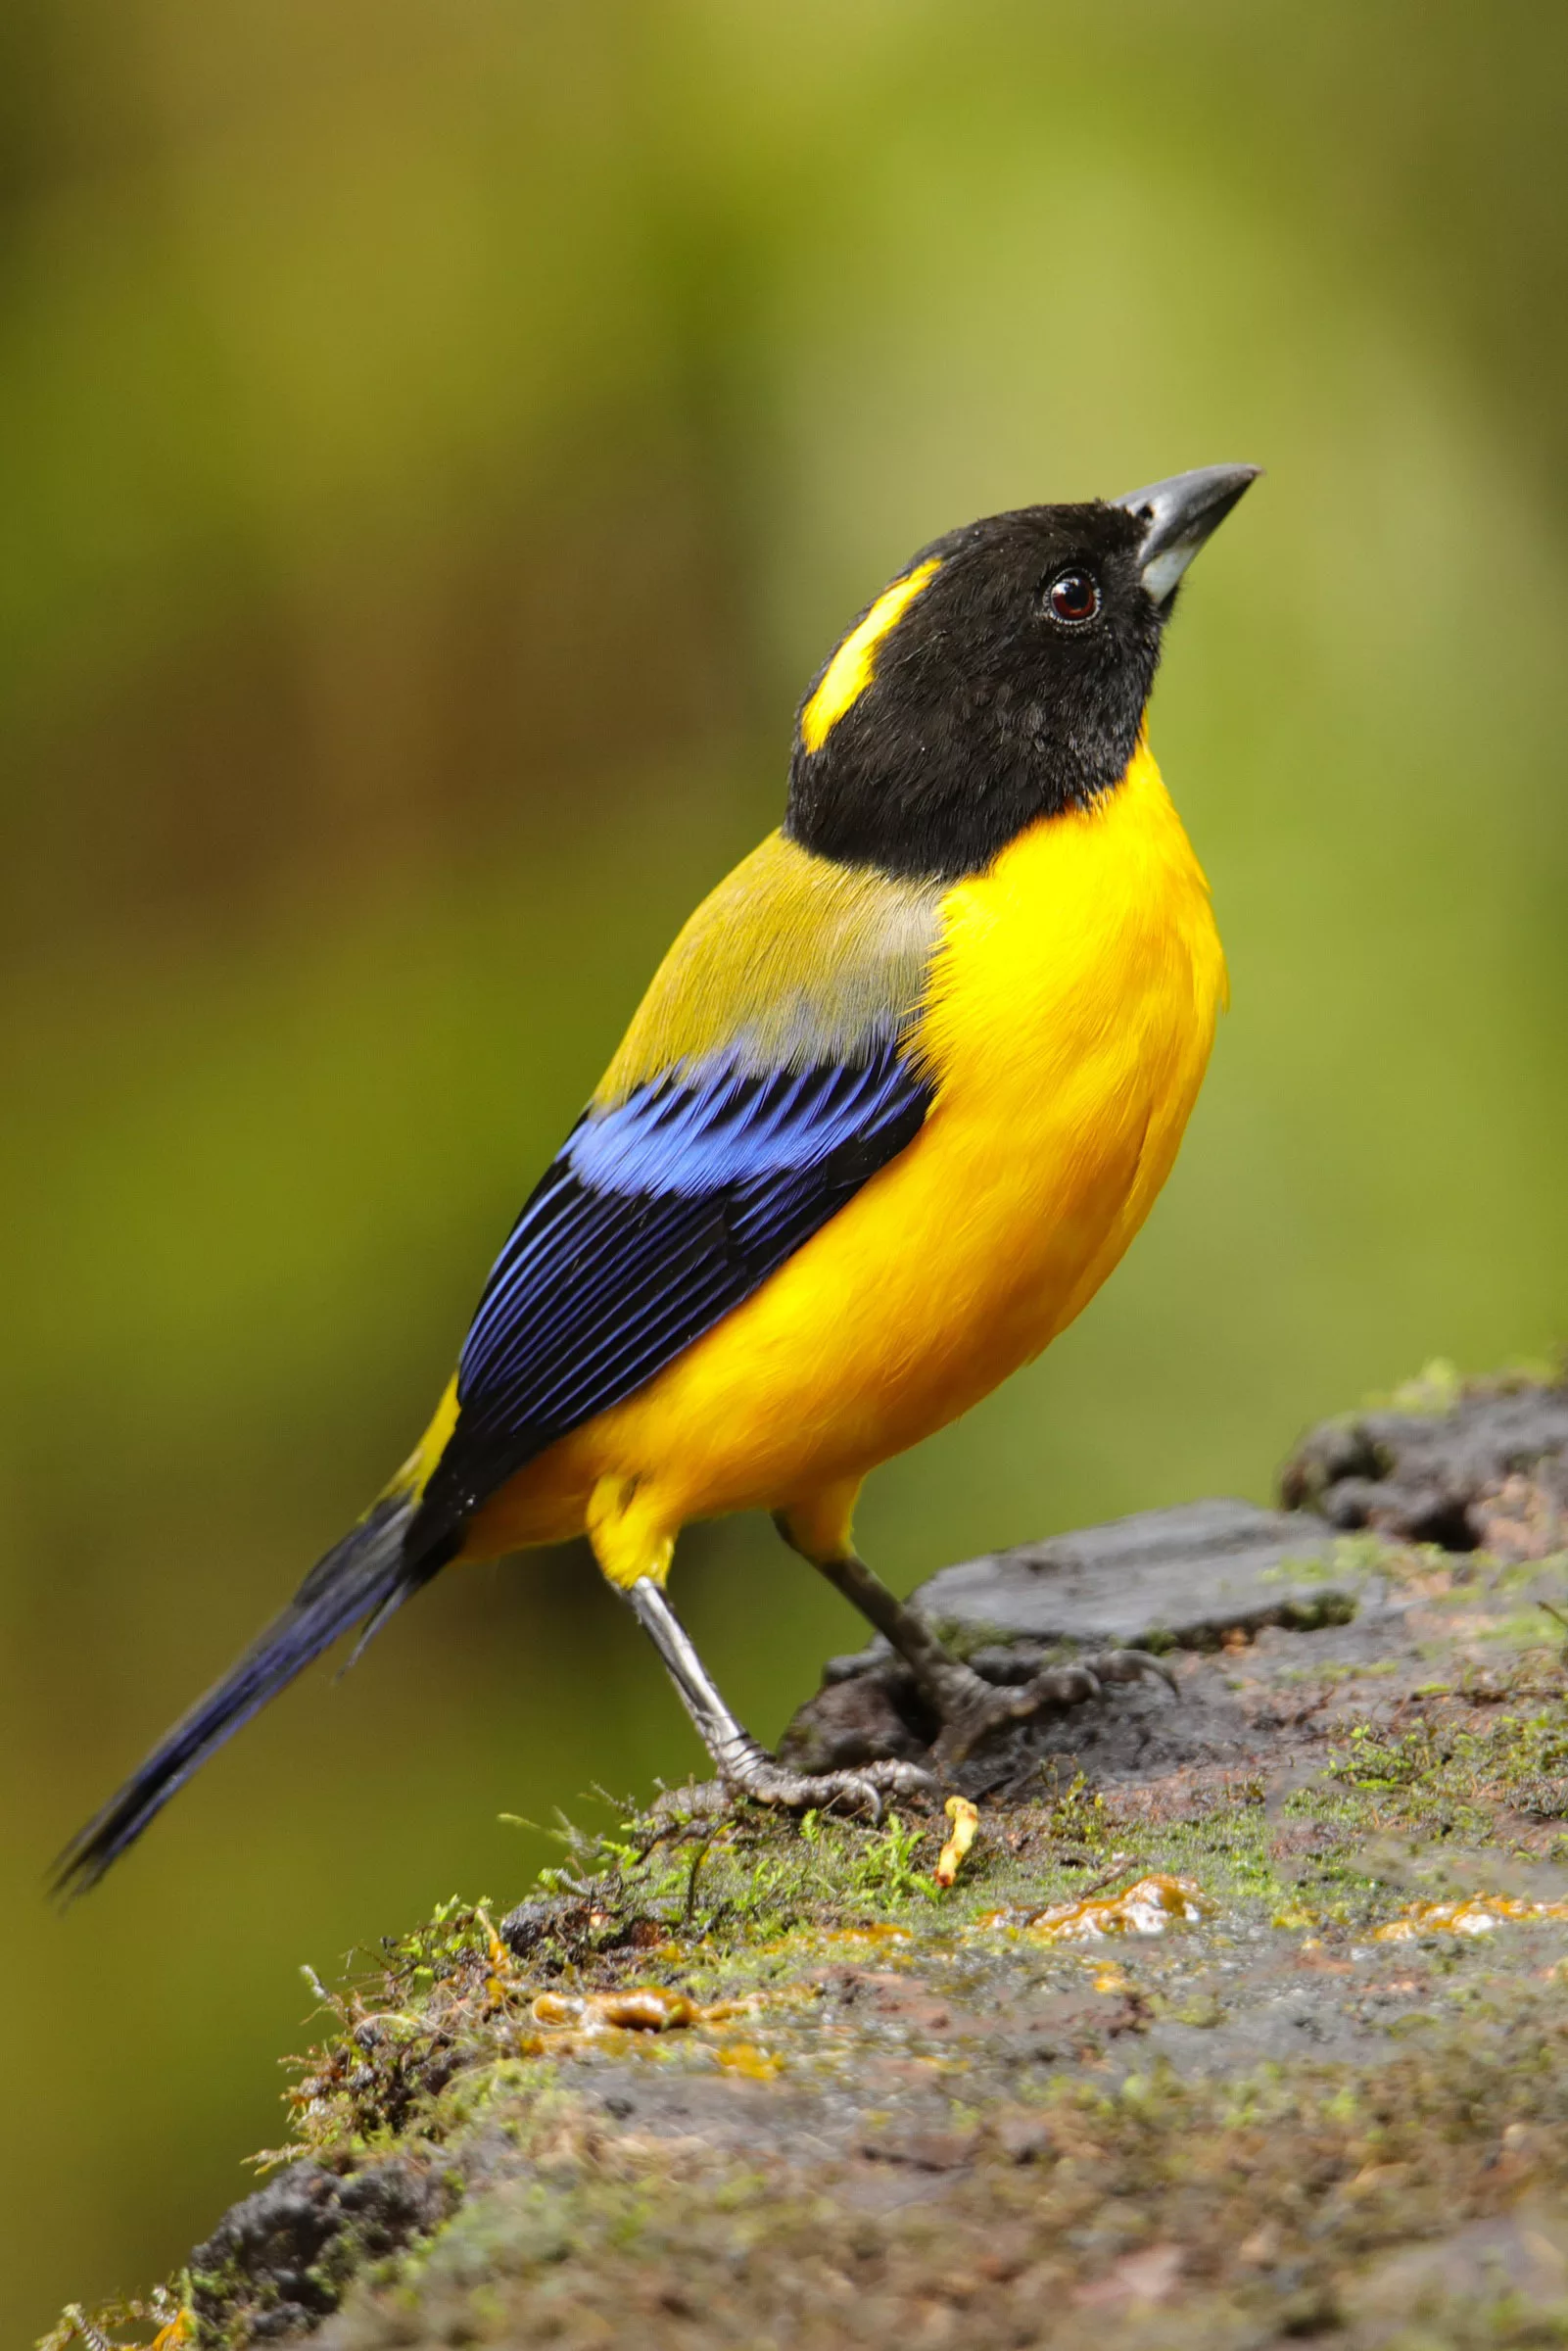 Ecuador photo safari for birds